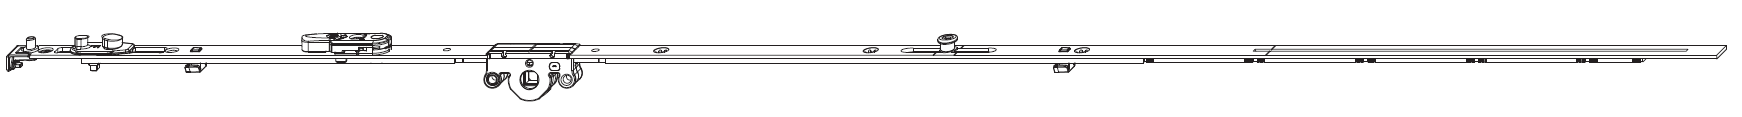 MAICO -  Cremonese MULTI-MATIC anta ribalta antieffrazione altezza maniglia fissa con piedino e dss per ribalta e bilanciere - gr / dim. 1090 - entrata 15 - alt. man. 500 - lbb/hbb 841 - 1090